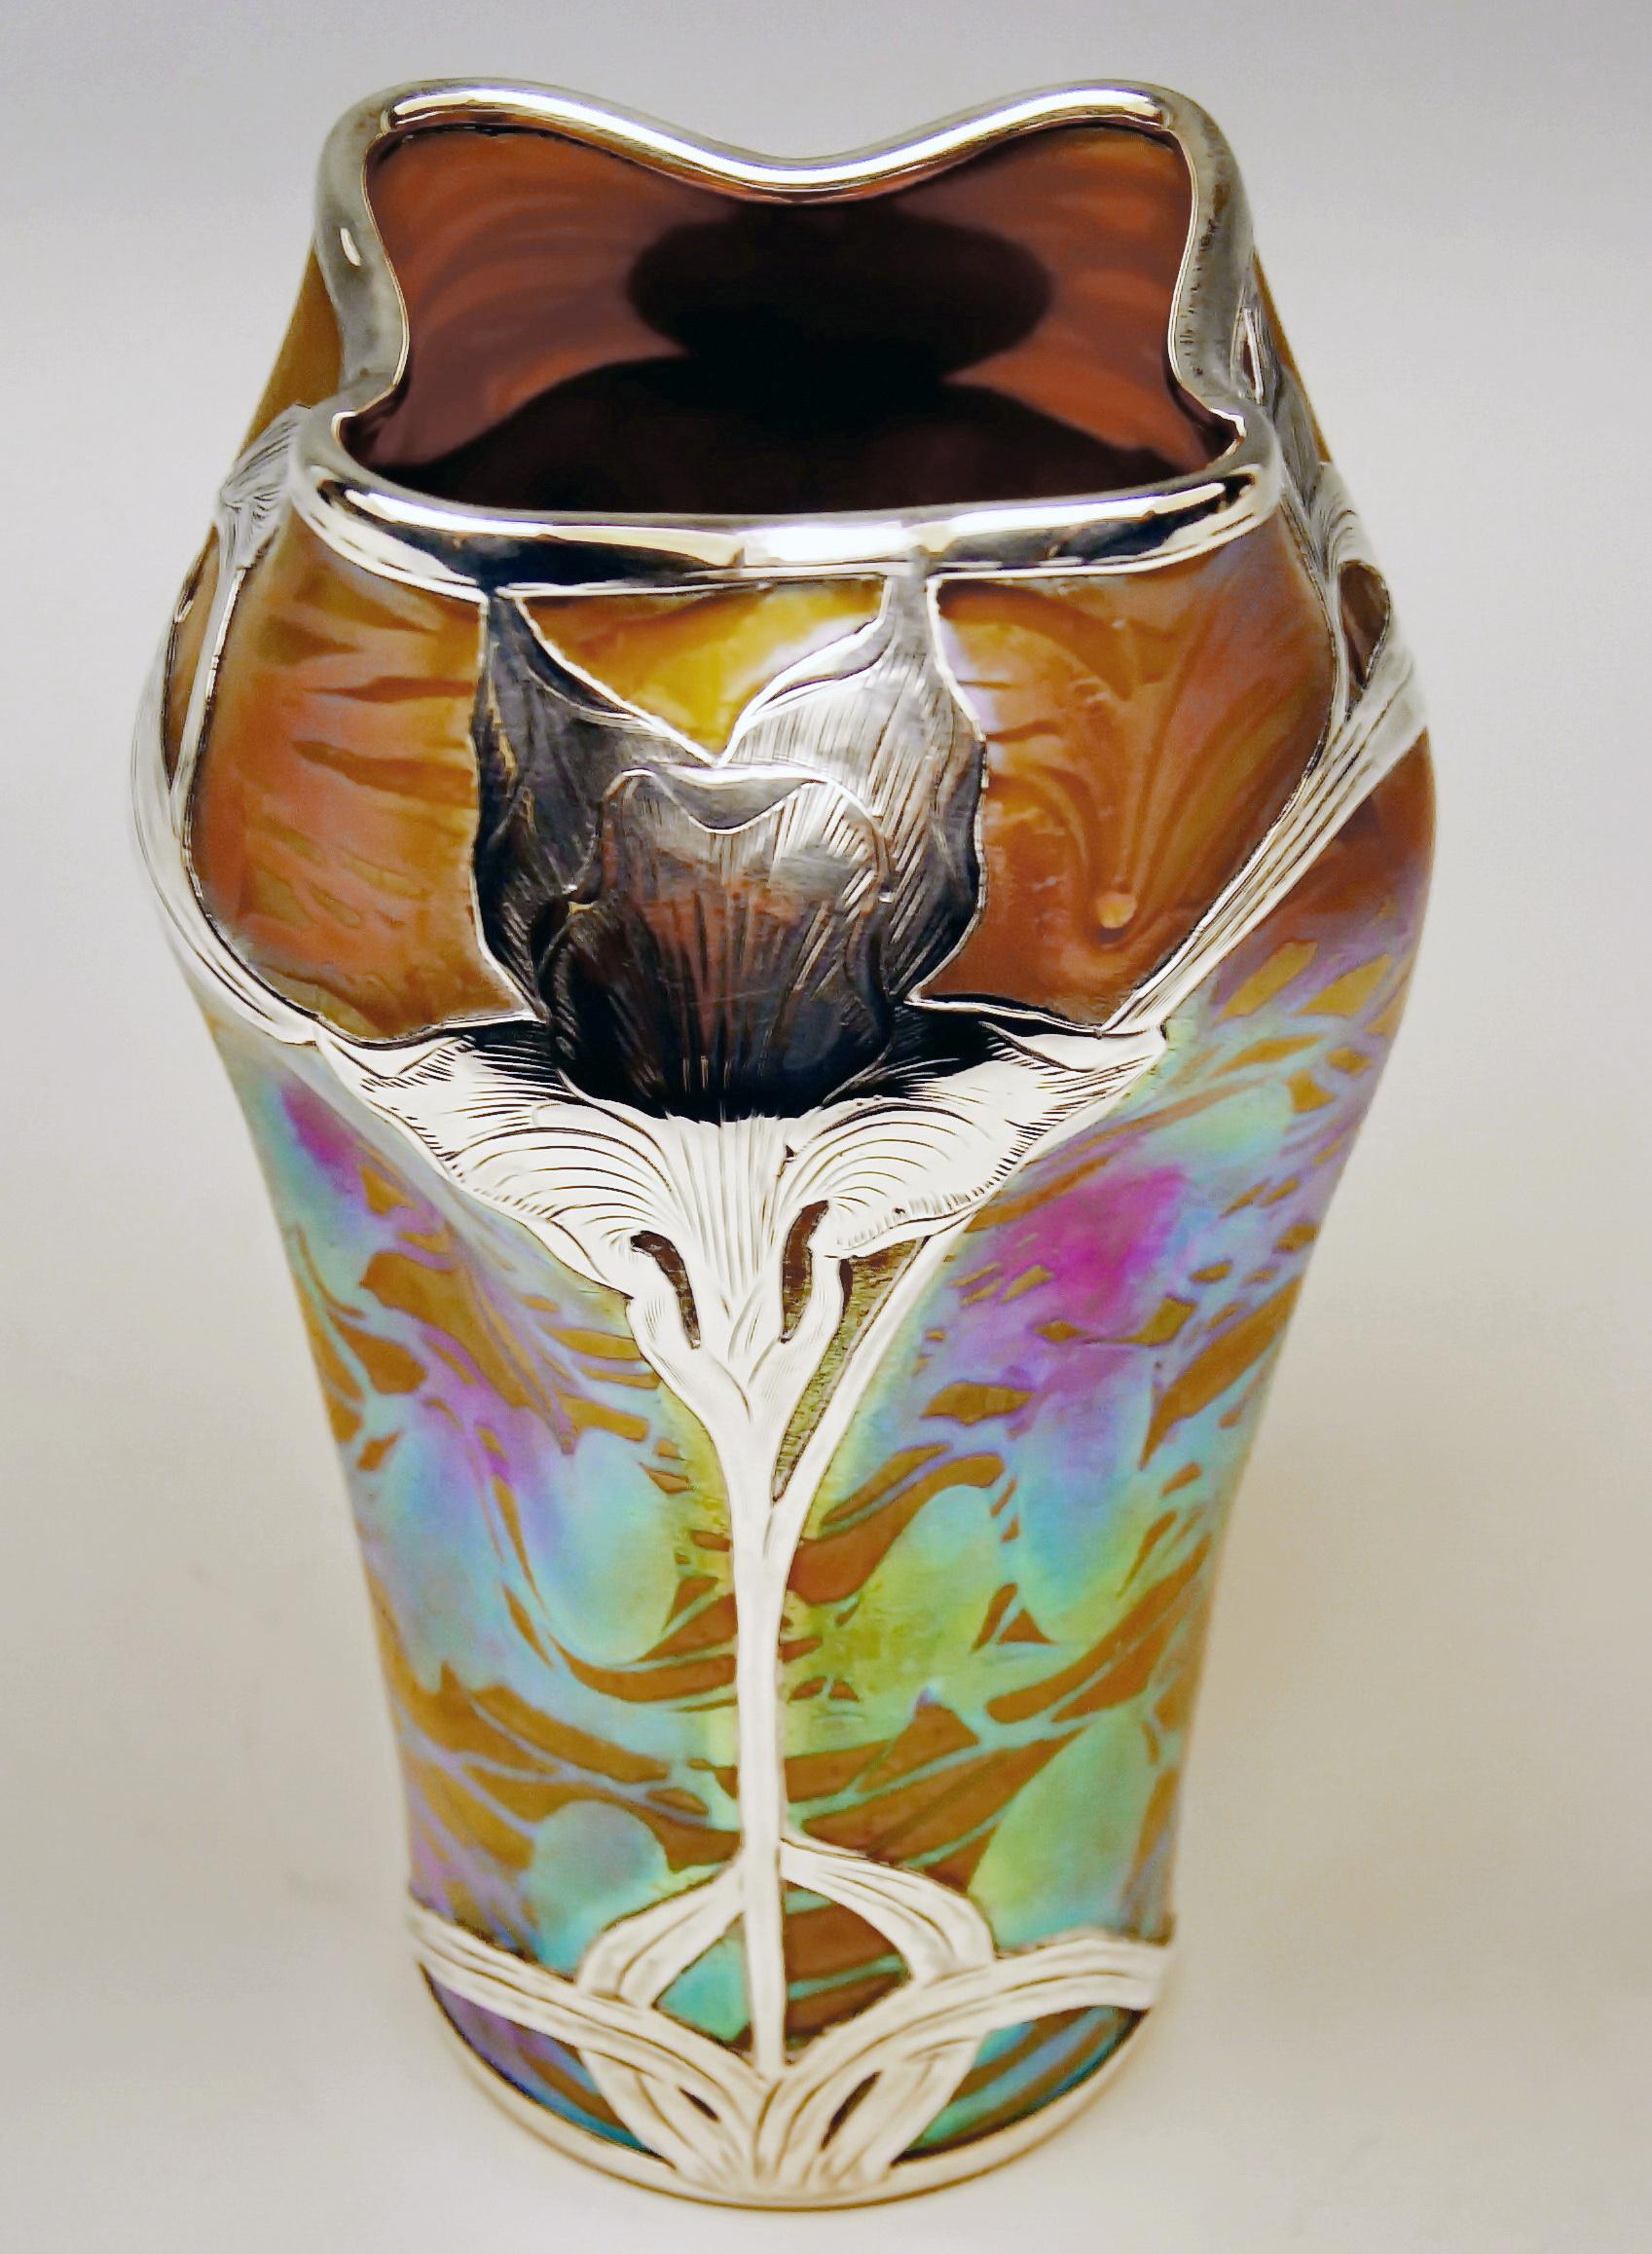 Austrian Vase Loetz Bohemia Art Nouveau Decor Phaenomen Genre 2-474 Made circa 1902